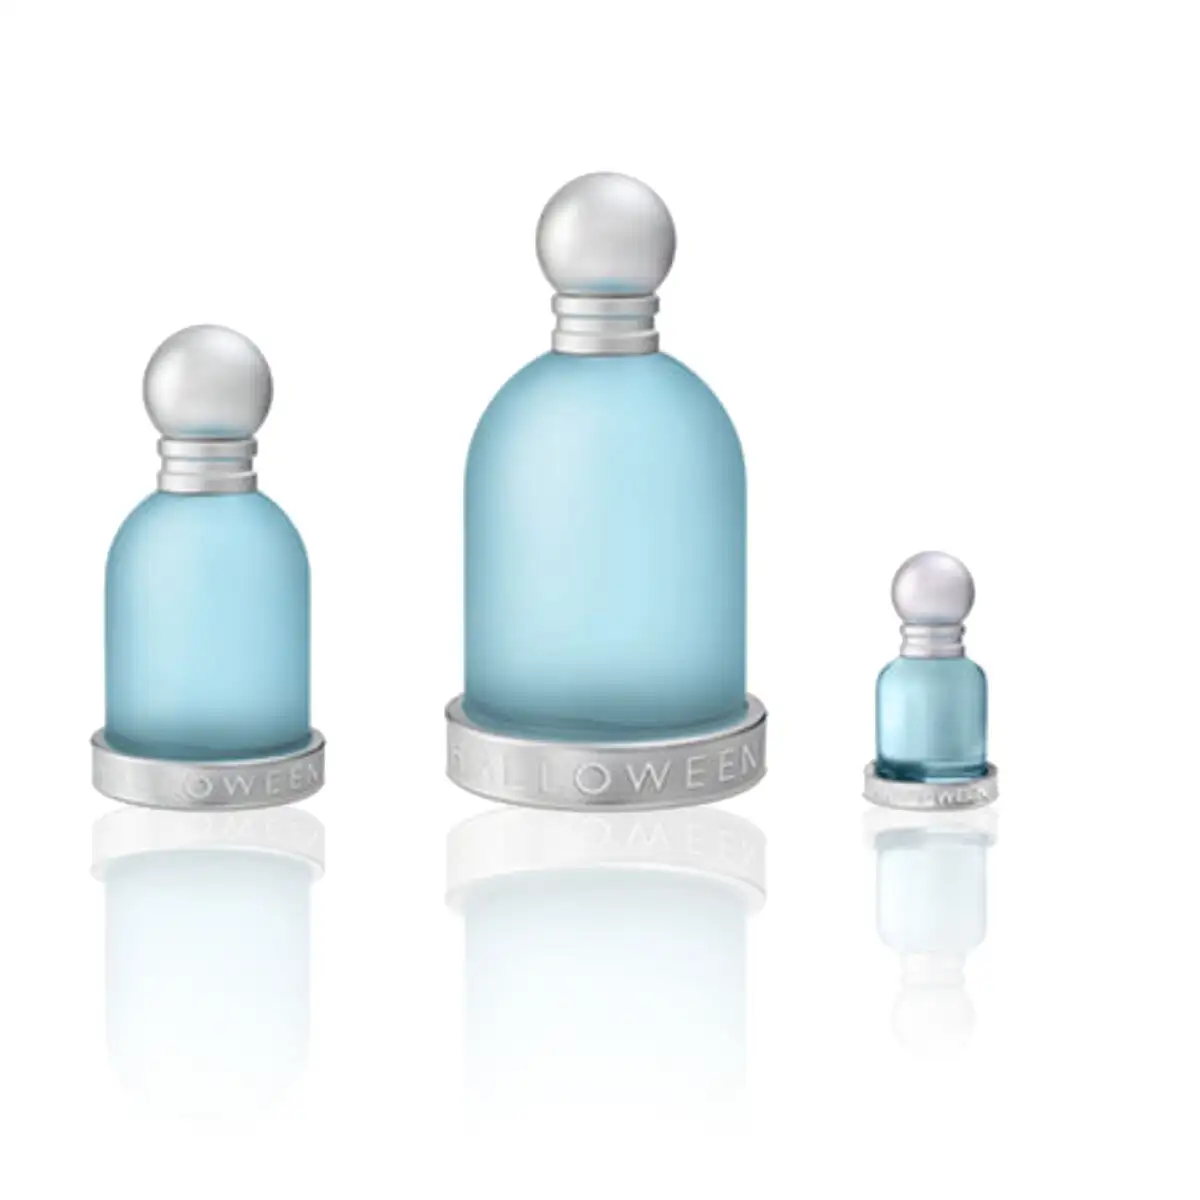 Set de parfum femme jesus del pozo halloween blue drop 3 pieces_2360. Bienvenue chez DIAYTAR SENEGAL - Votre Plateforme Shopping pour Tous. Découvrez un large éventail de produits qui célèbrent la diversité et la beauté du Sénégal.